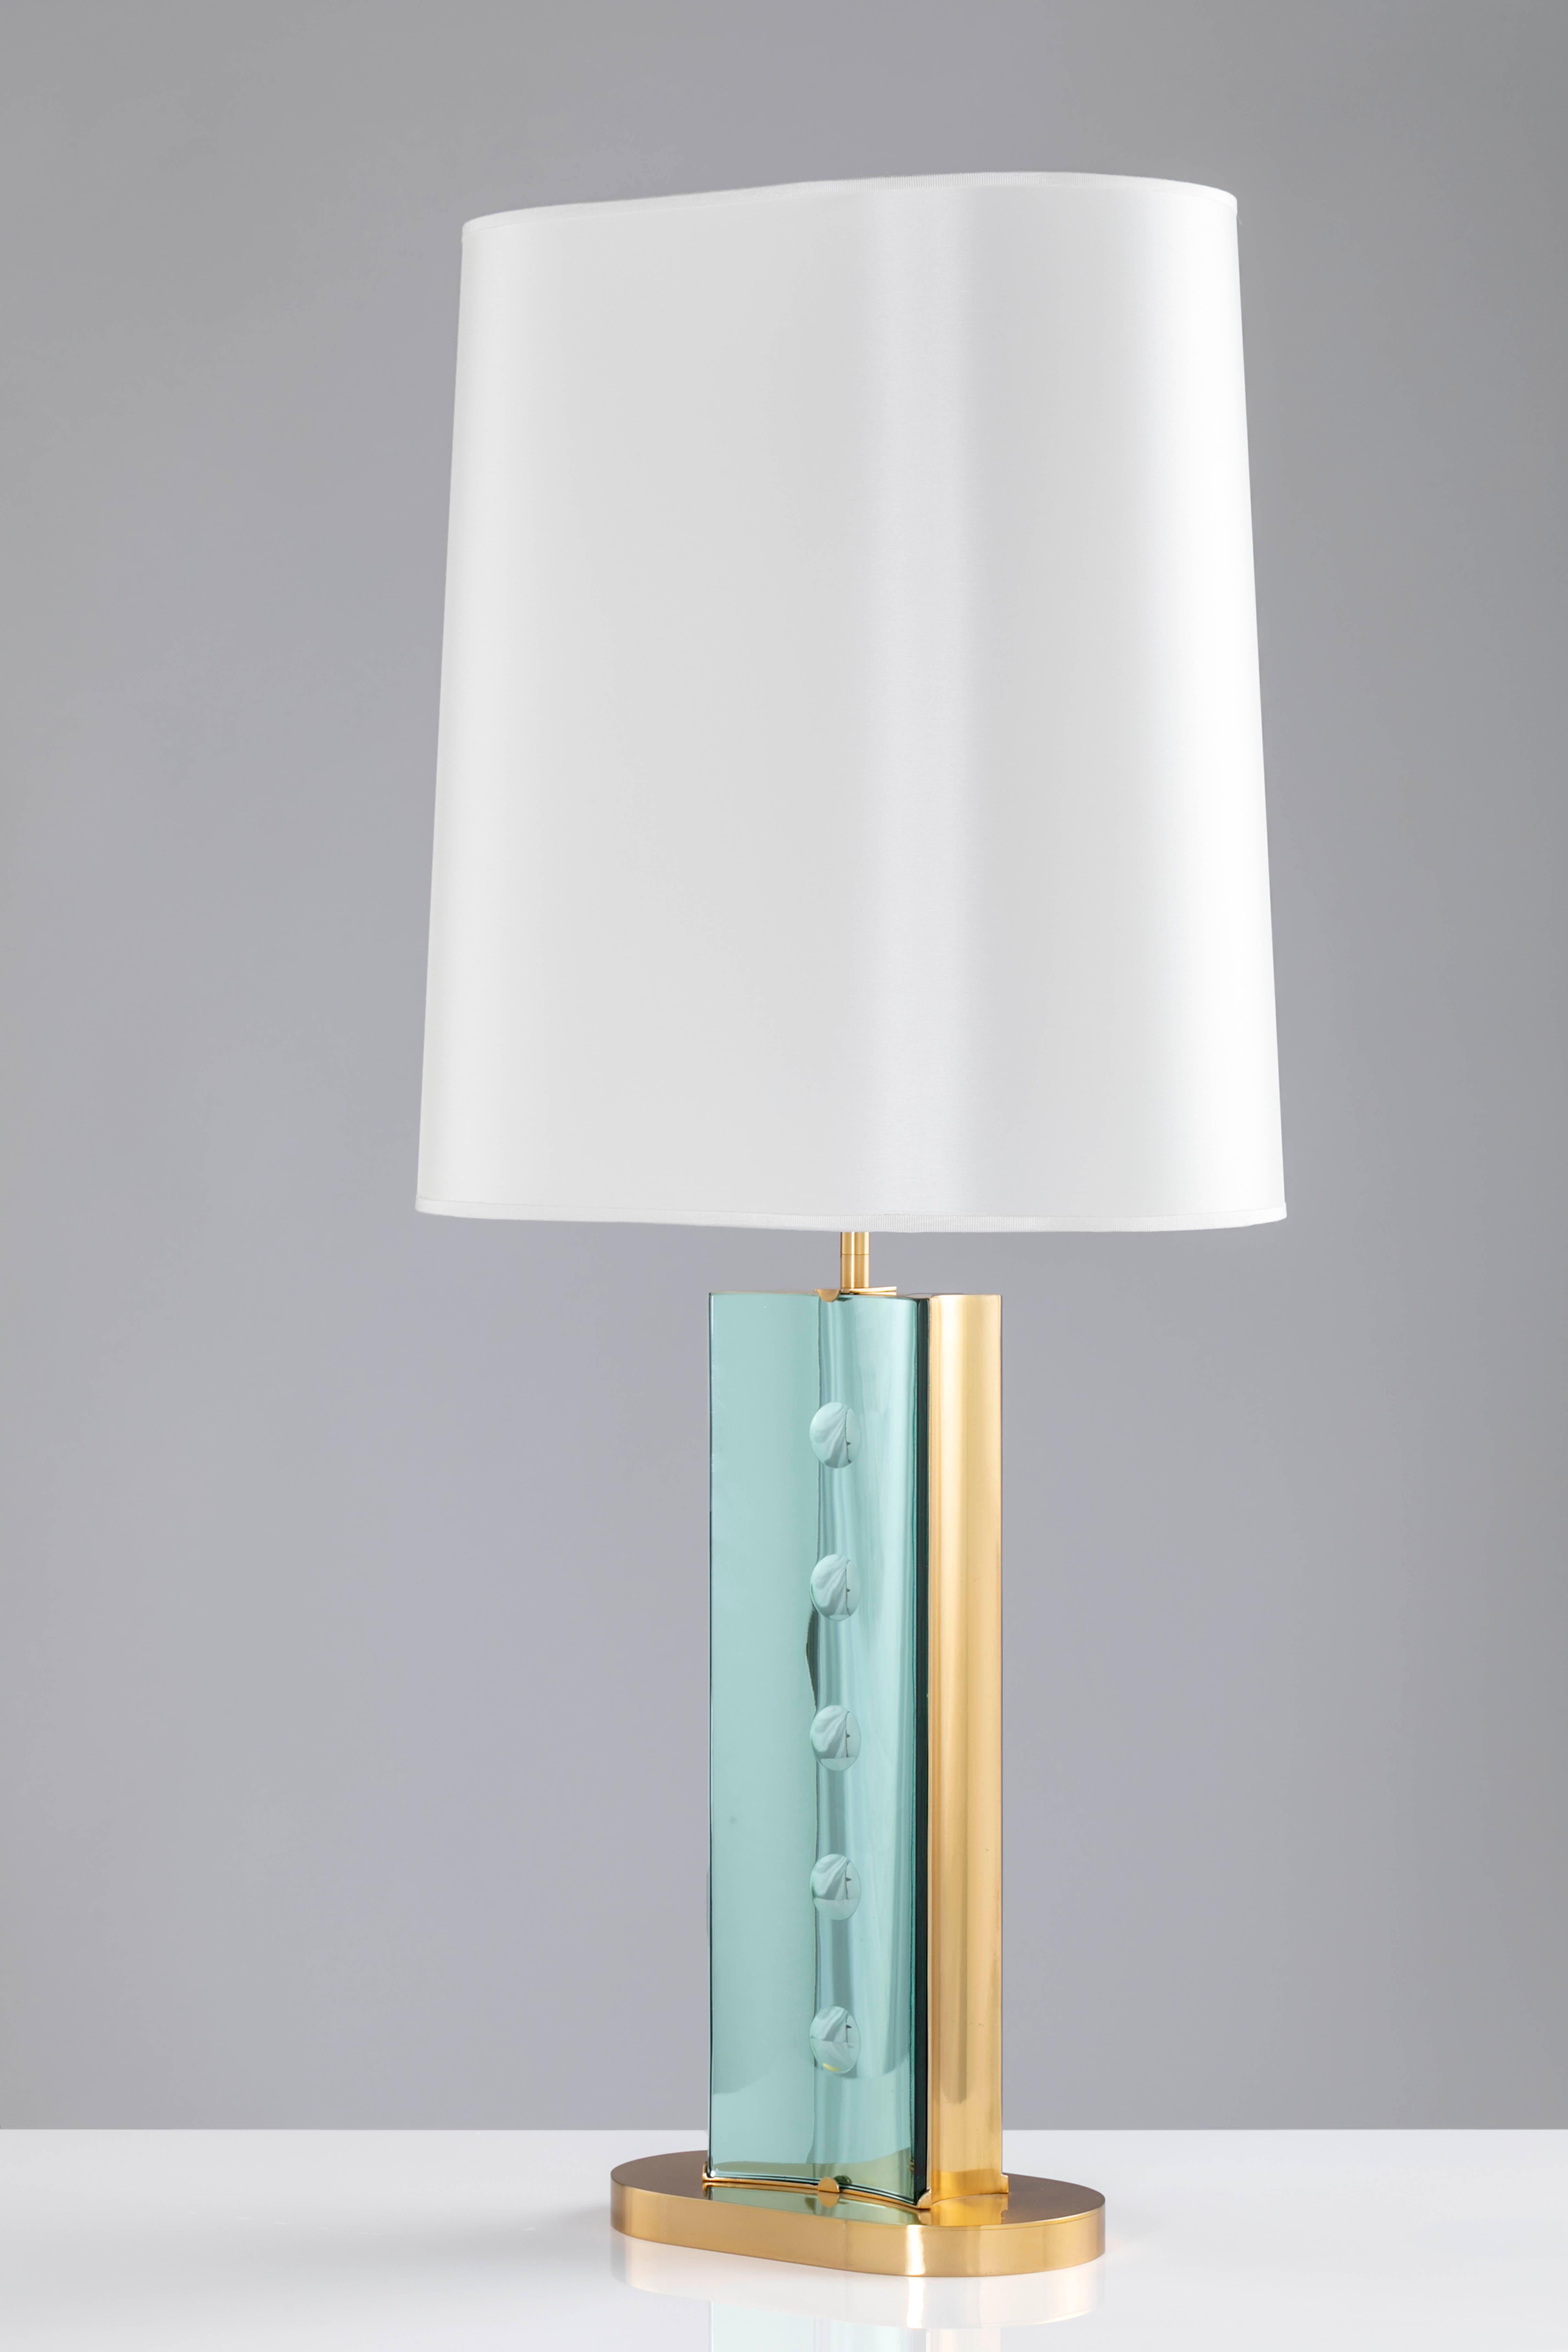 Paire de lampes 'TEGOLINE VERDI' de Roberto Giulio Rida

Les lampes de table 'Tegoline verdi' font partie d'une petite collection de lampes dans les couleurs suivantes : or, vert et bleu. Chaque paire est unique et ne peut être répétée.
Le corps des